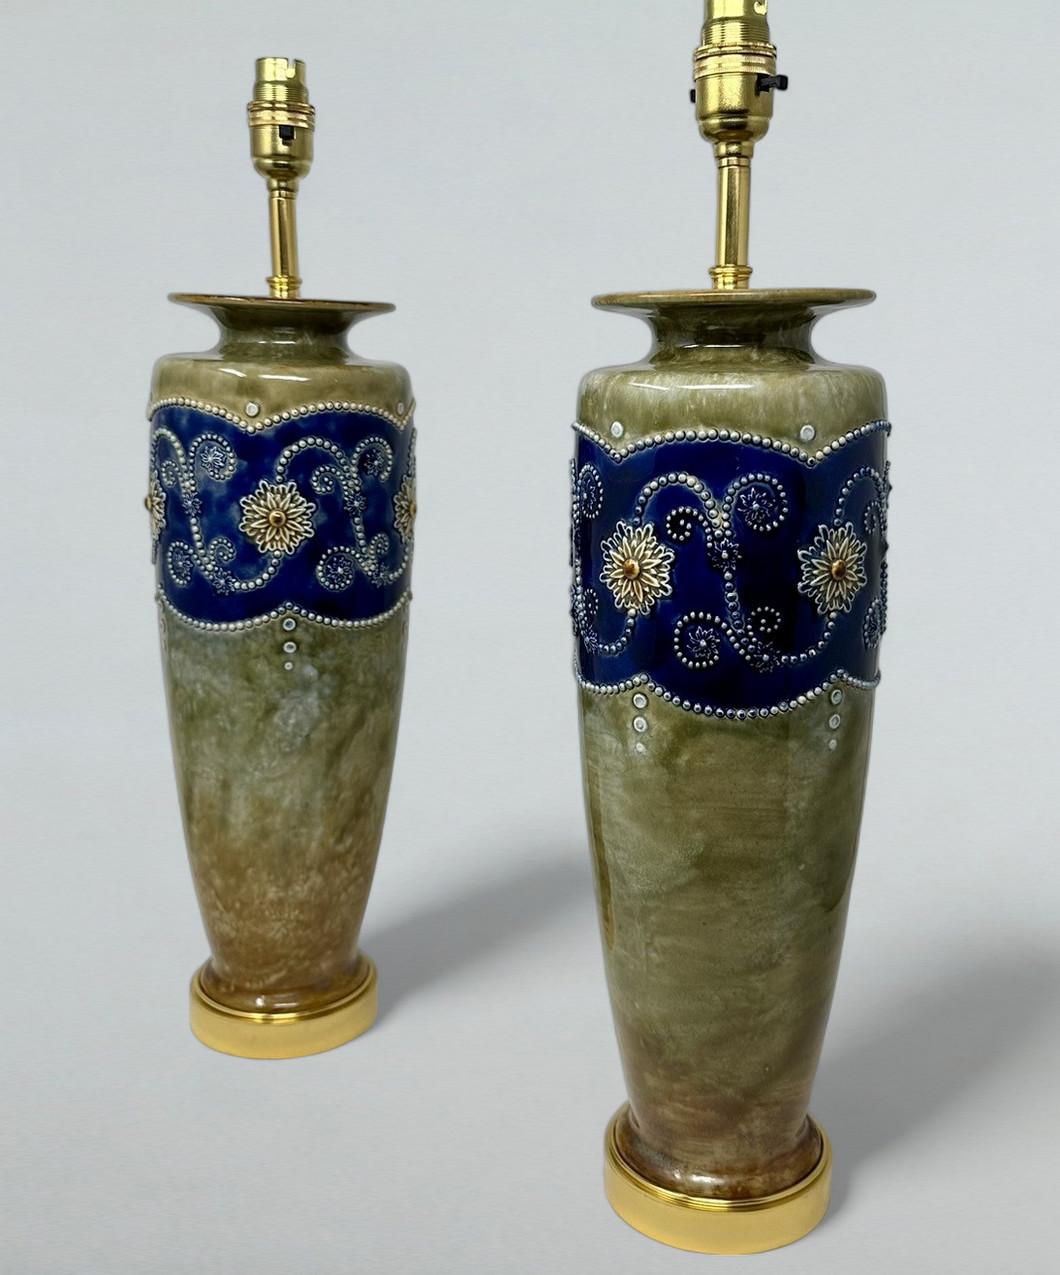 Ein sehr stilvolles, identisches Paar englischer, mit Ormolu beschlagener Royal Doulton Lambeth Moulded Salt-Glaze Stoneware Pottery großer, schlanker Mantelvasen der Keramikkünstlerin Minnie Webb, die jetzt in ein Paar elektrischer Tischlampen